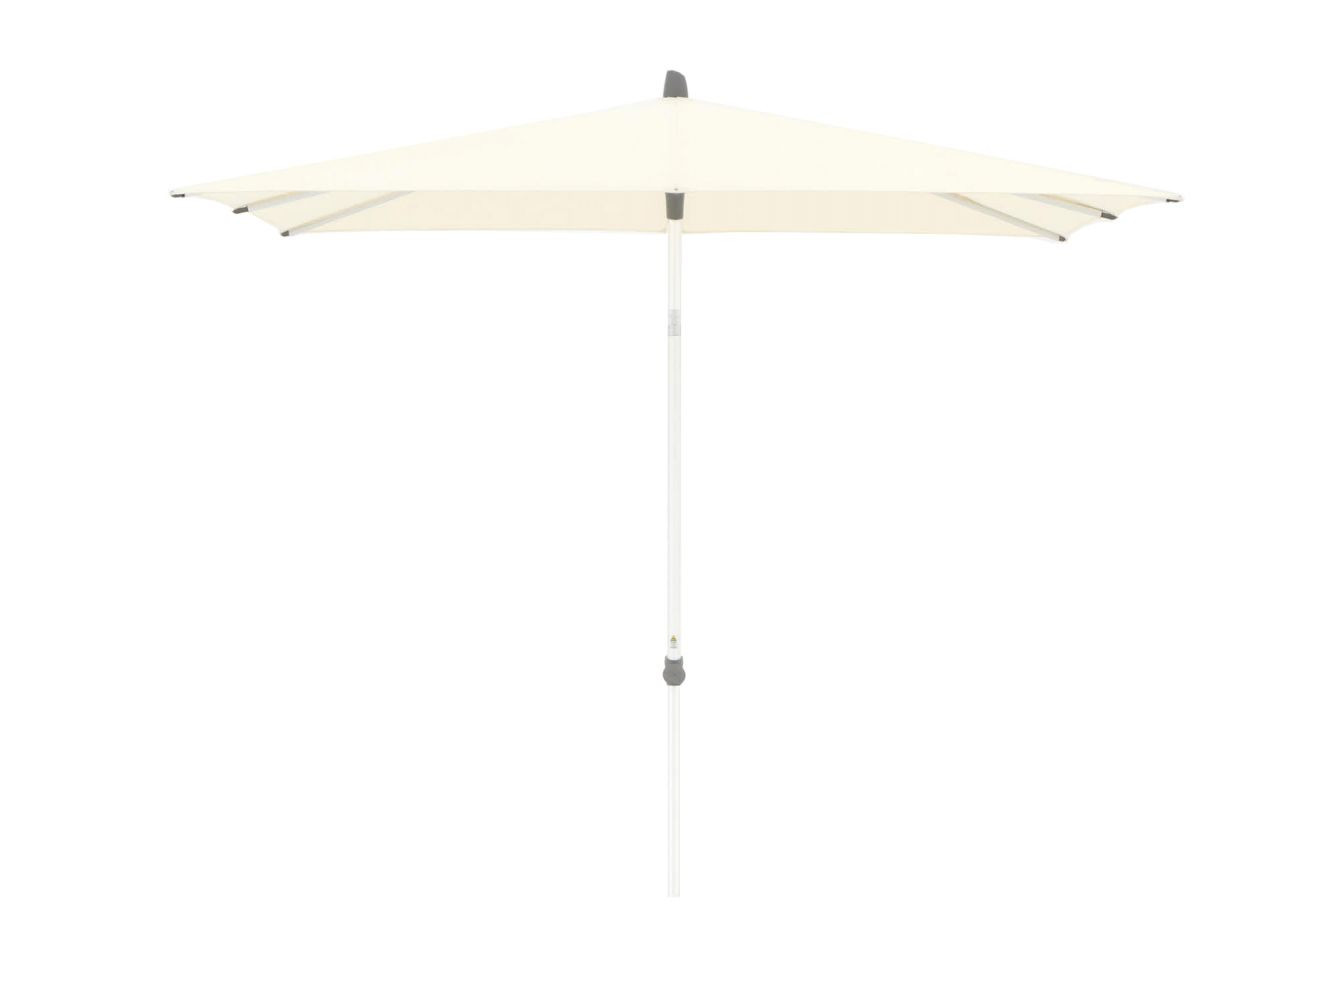 Glatz Alu-Smart parasol 240x240cm - Laagste prijsgarantie!